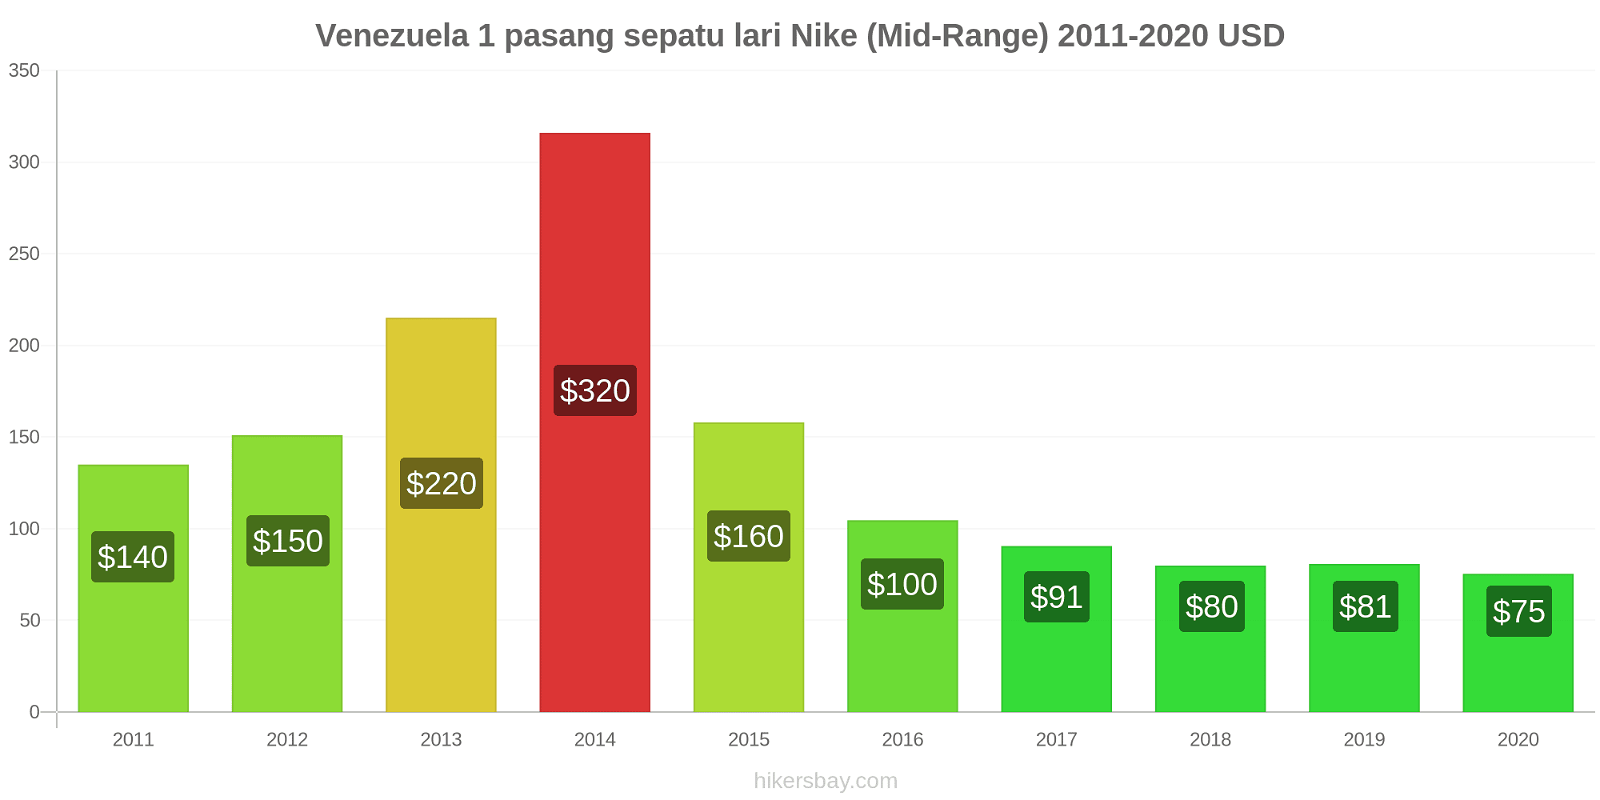 Venezuela perubahan harga 1 pasang sepatu lari Nike (Mid-Range) hikersbay.com